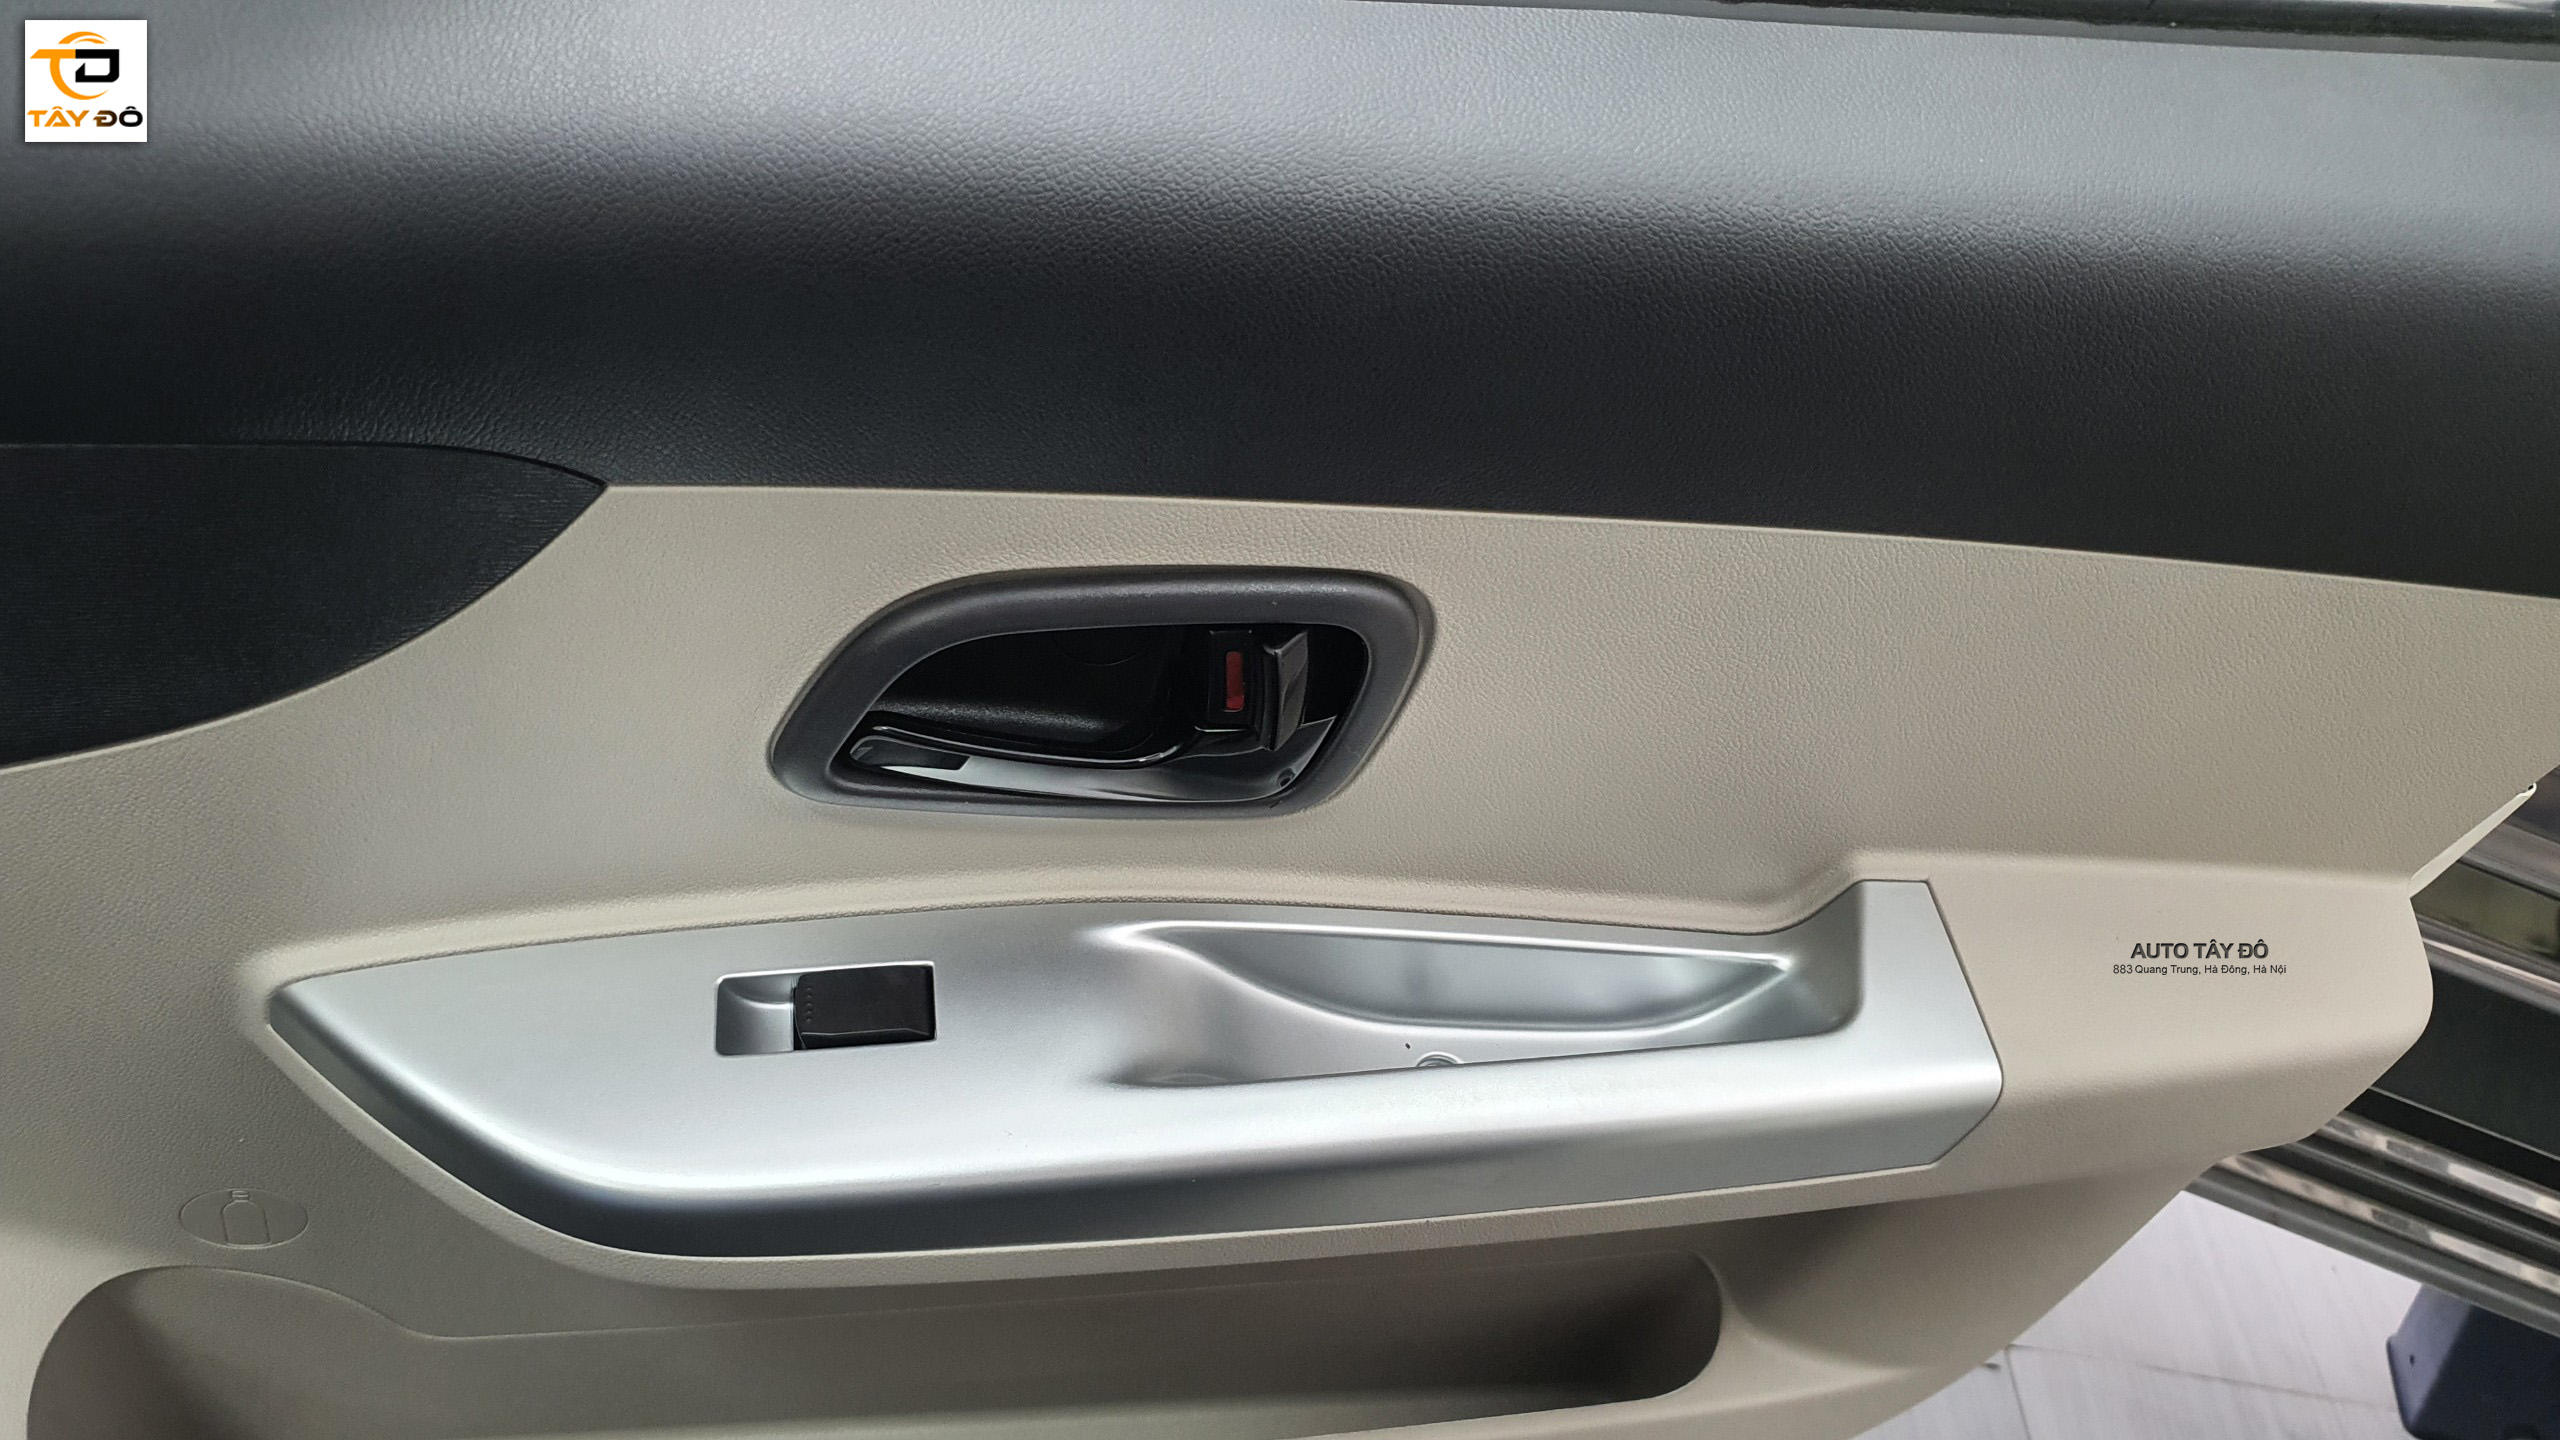 Cửa kính điện tiện lợi được trang bị trên xe Tera 100 (2)